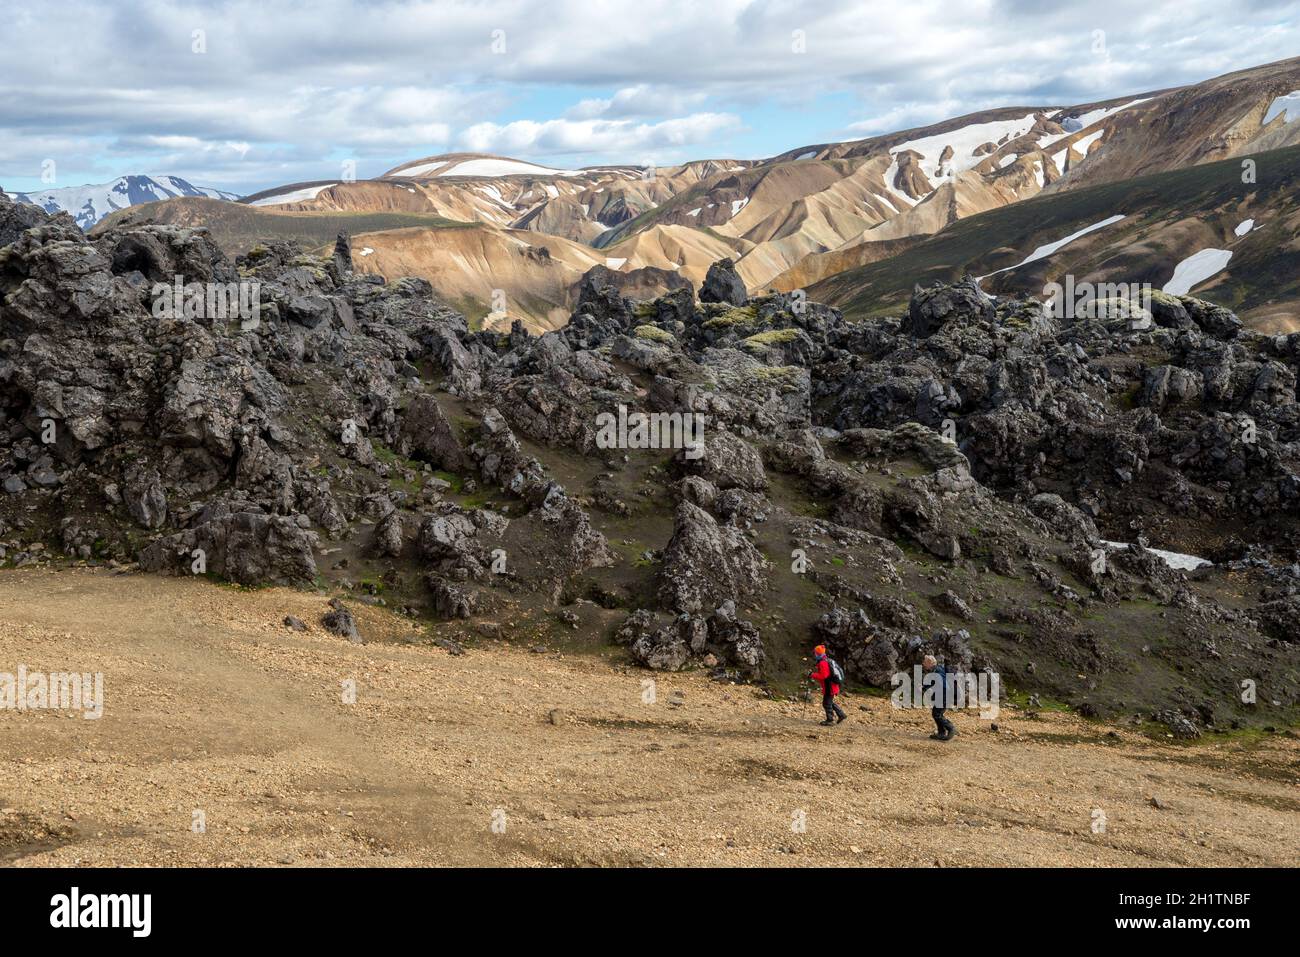 Landmannalaugar, Islande - 30 juillet 2017 : randonneurs dans les montagnes volcaniques de Landmannalaugar, dans la réserve naturelle de Fjallabak. Islande Banque D'Images